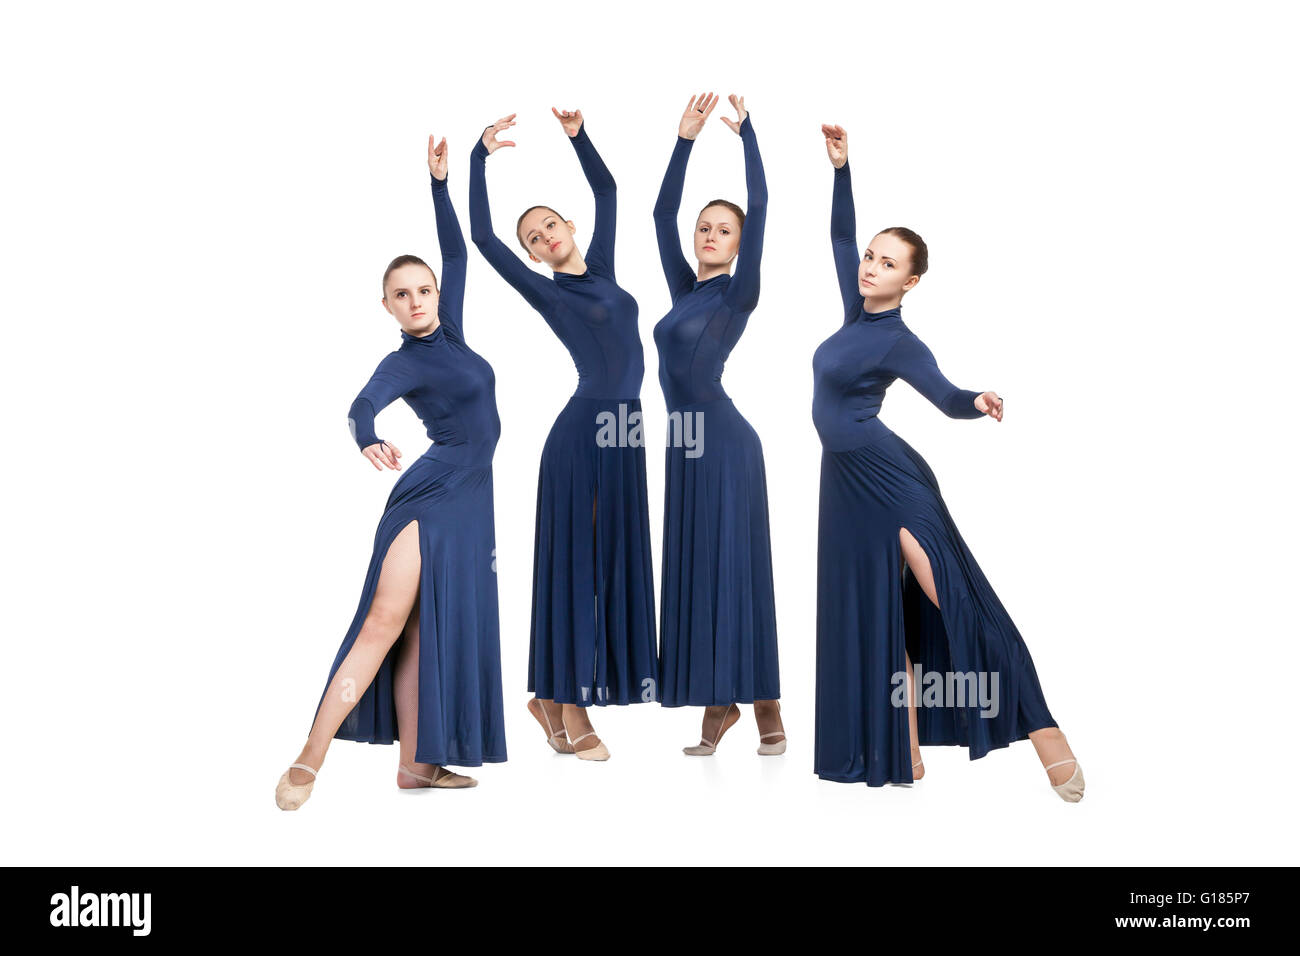 junge Tänzerinnen und Tänzer tanzen über weiße backgroud Stockfoto